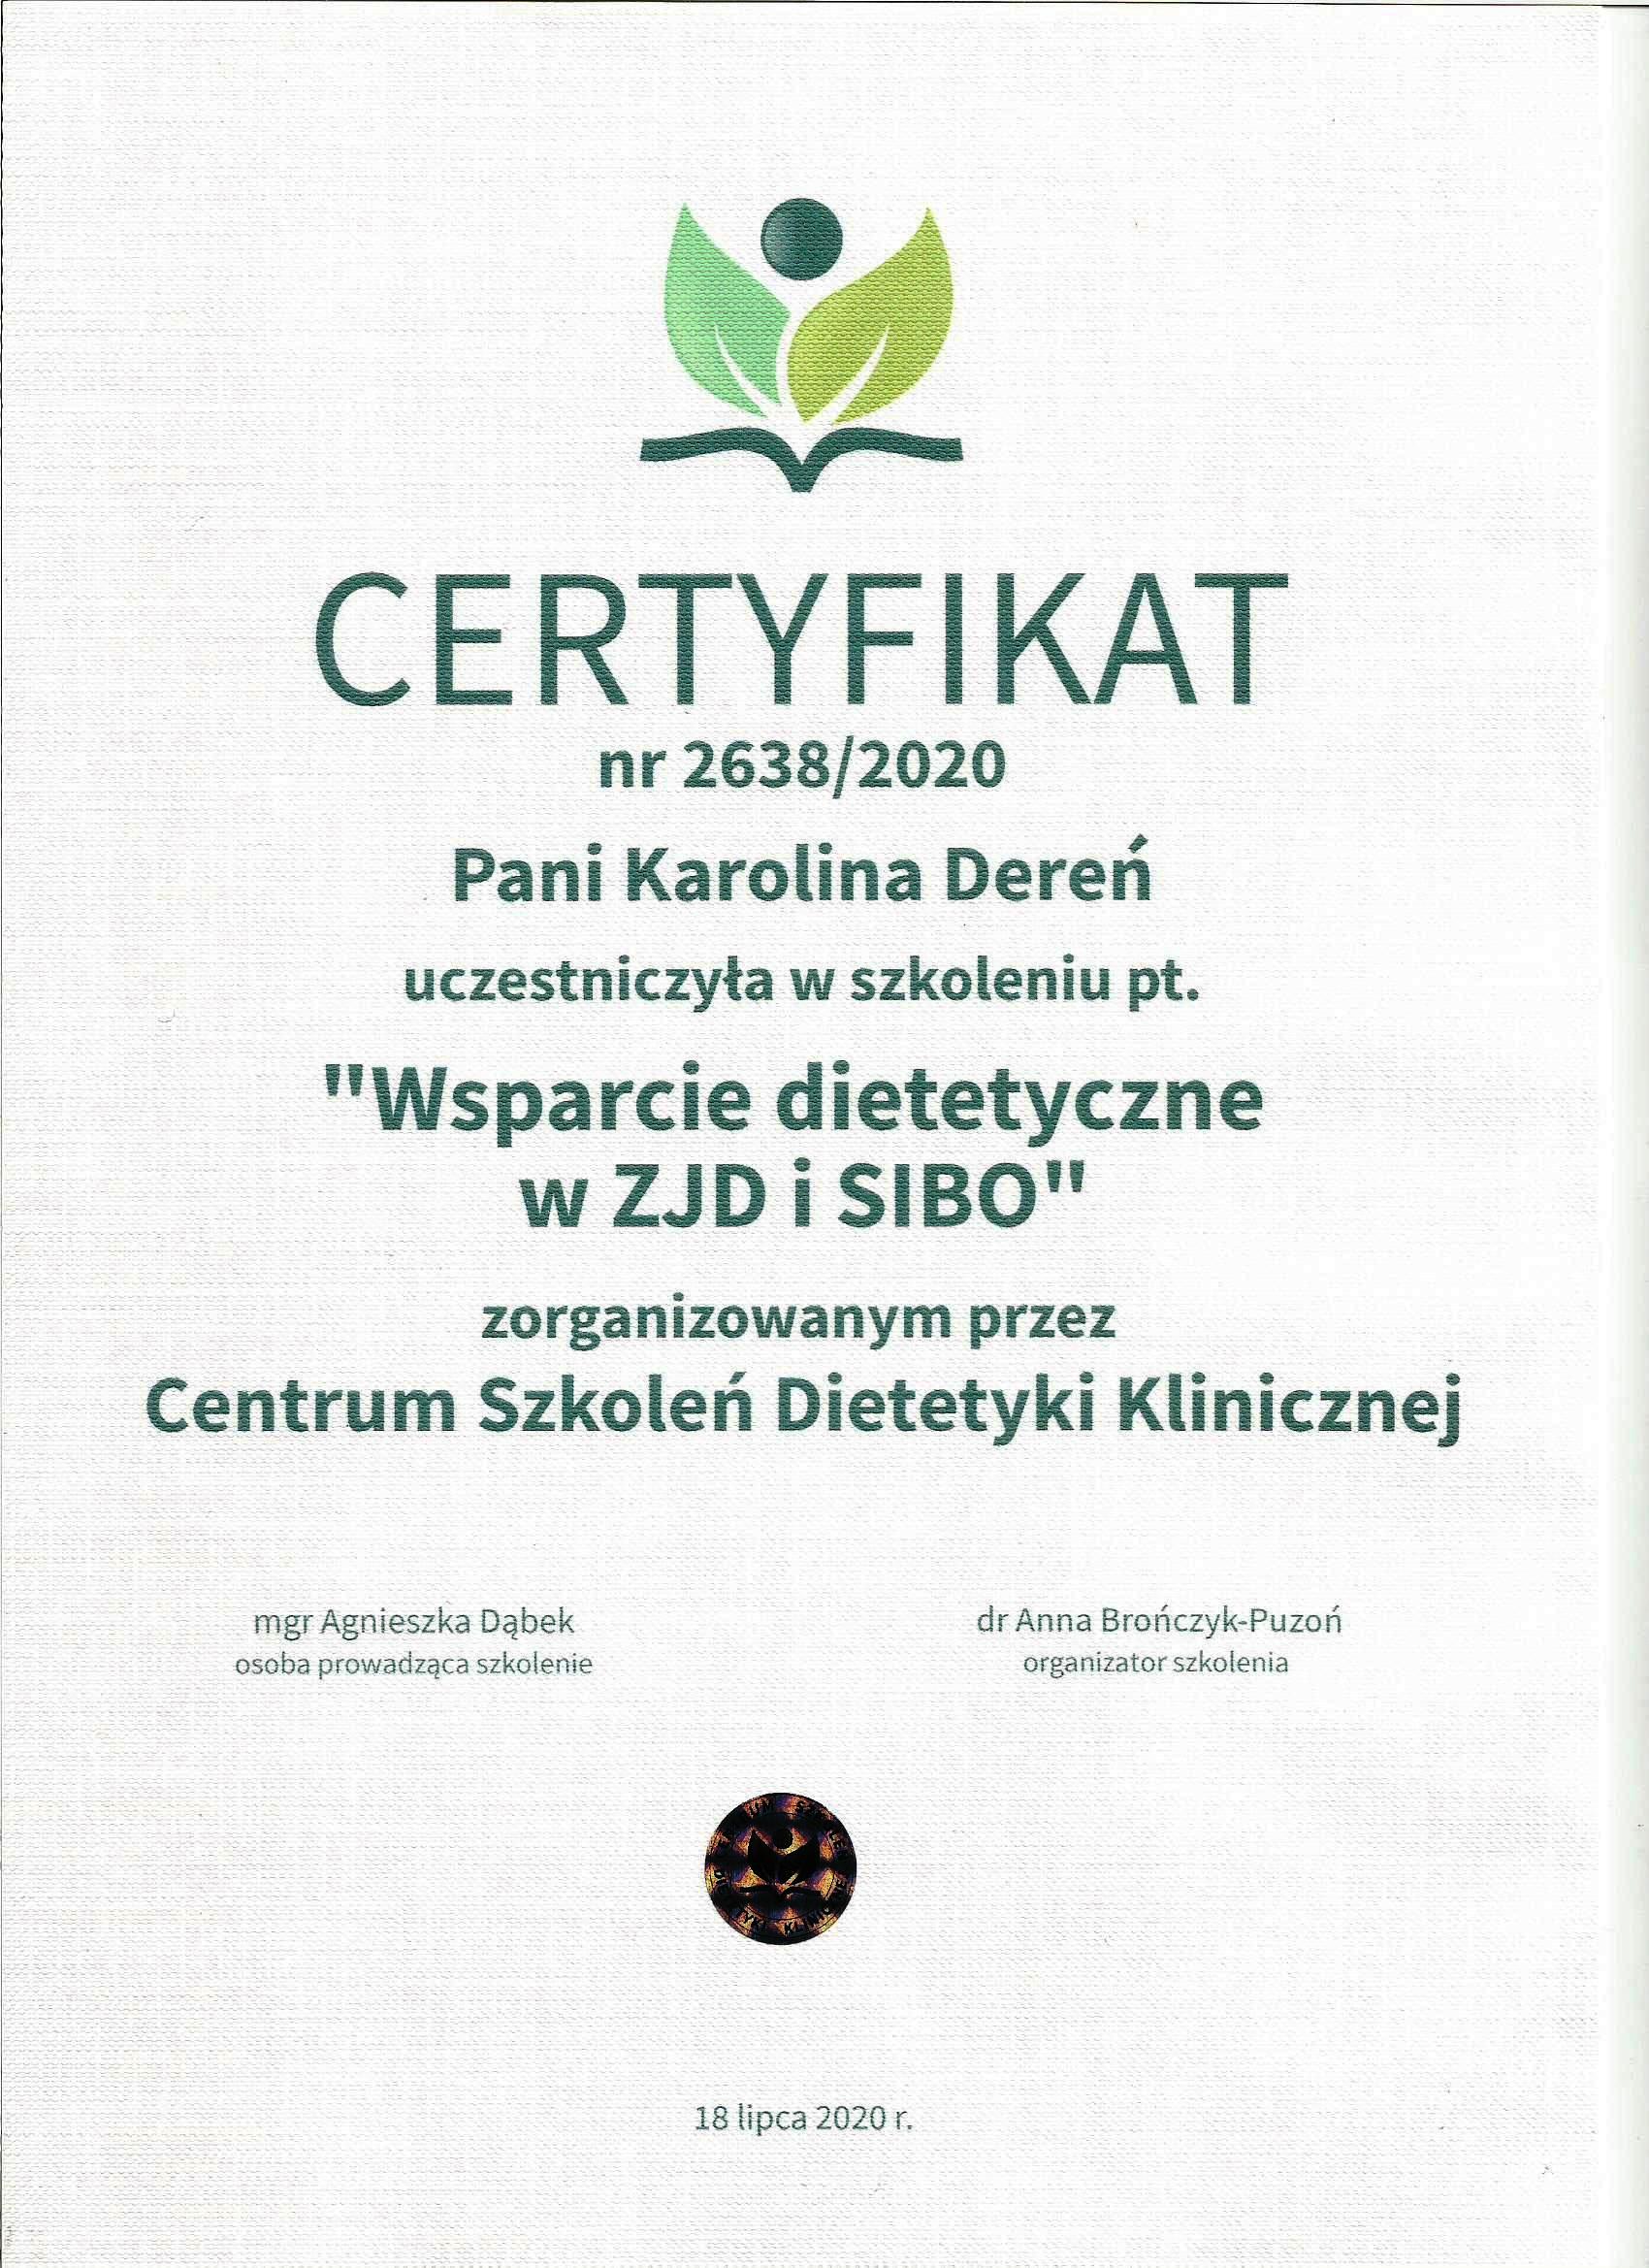 karolina deren dietetyk certyfikat 1